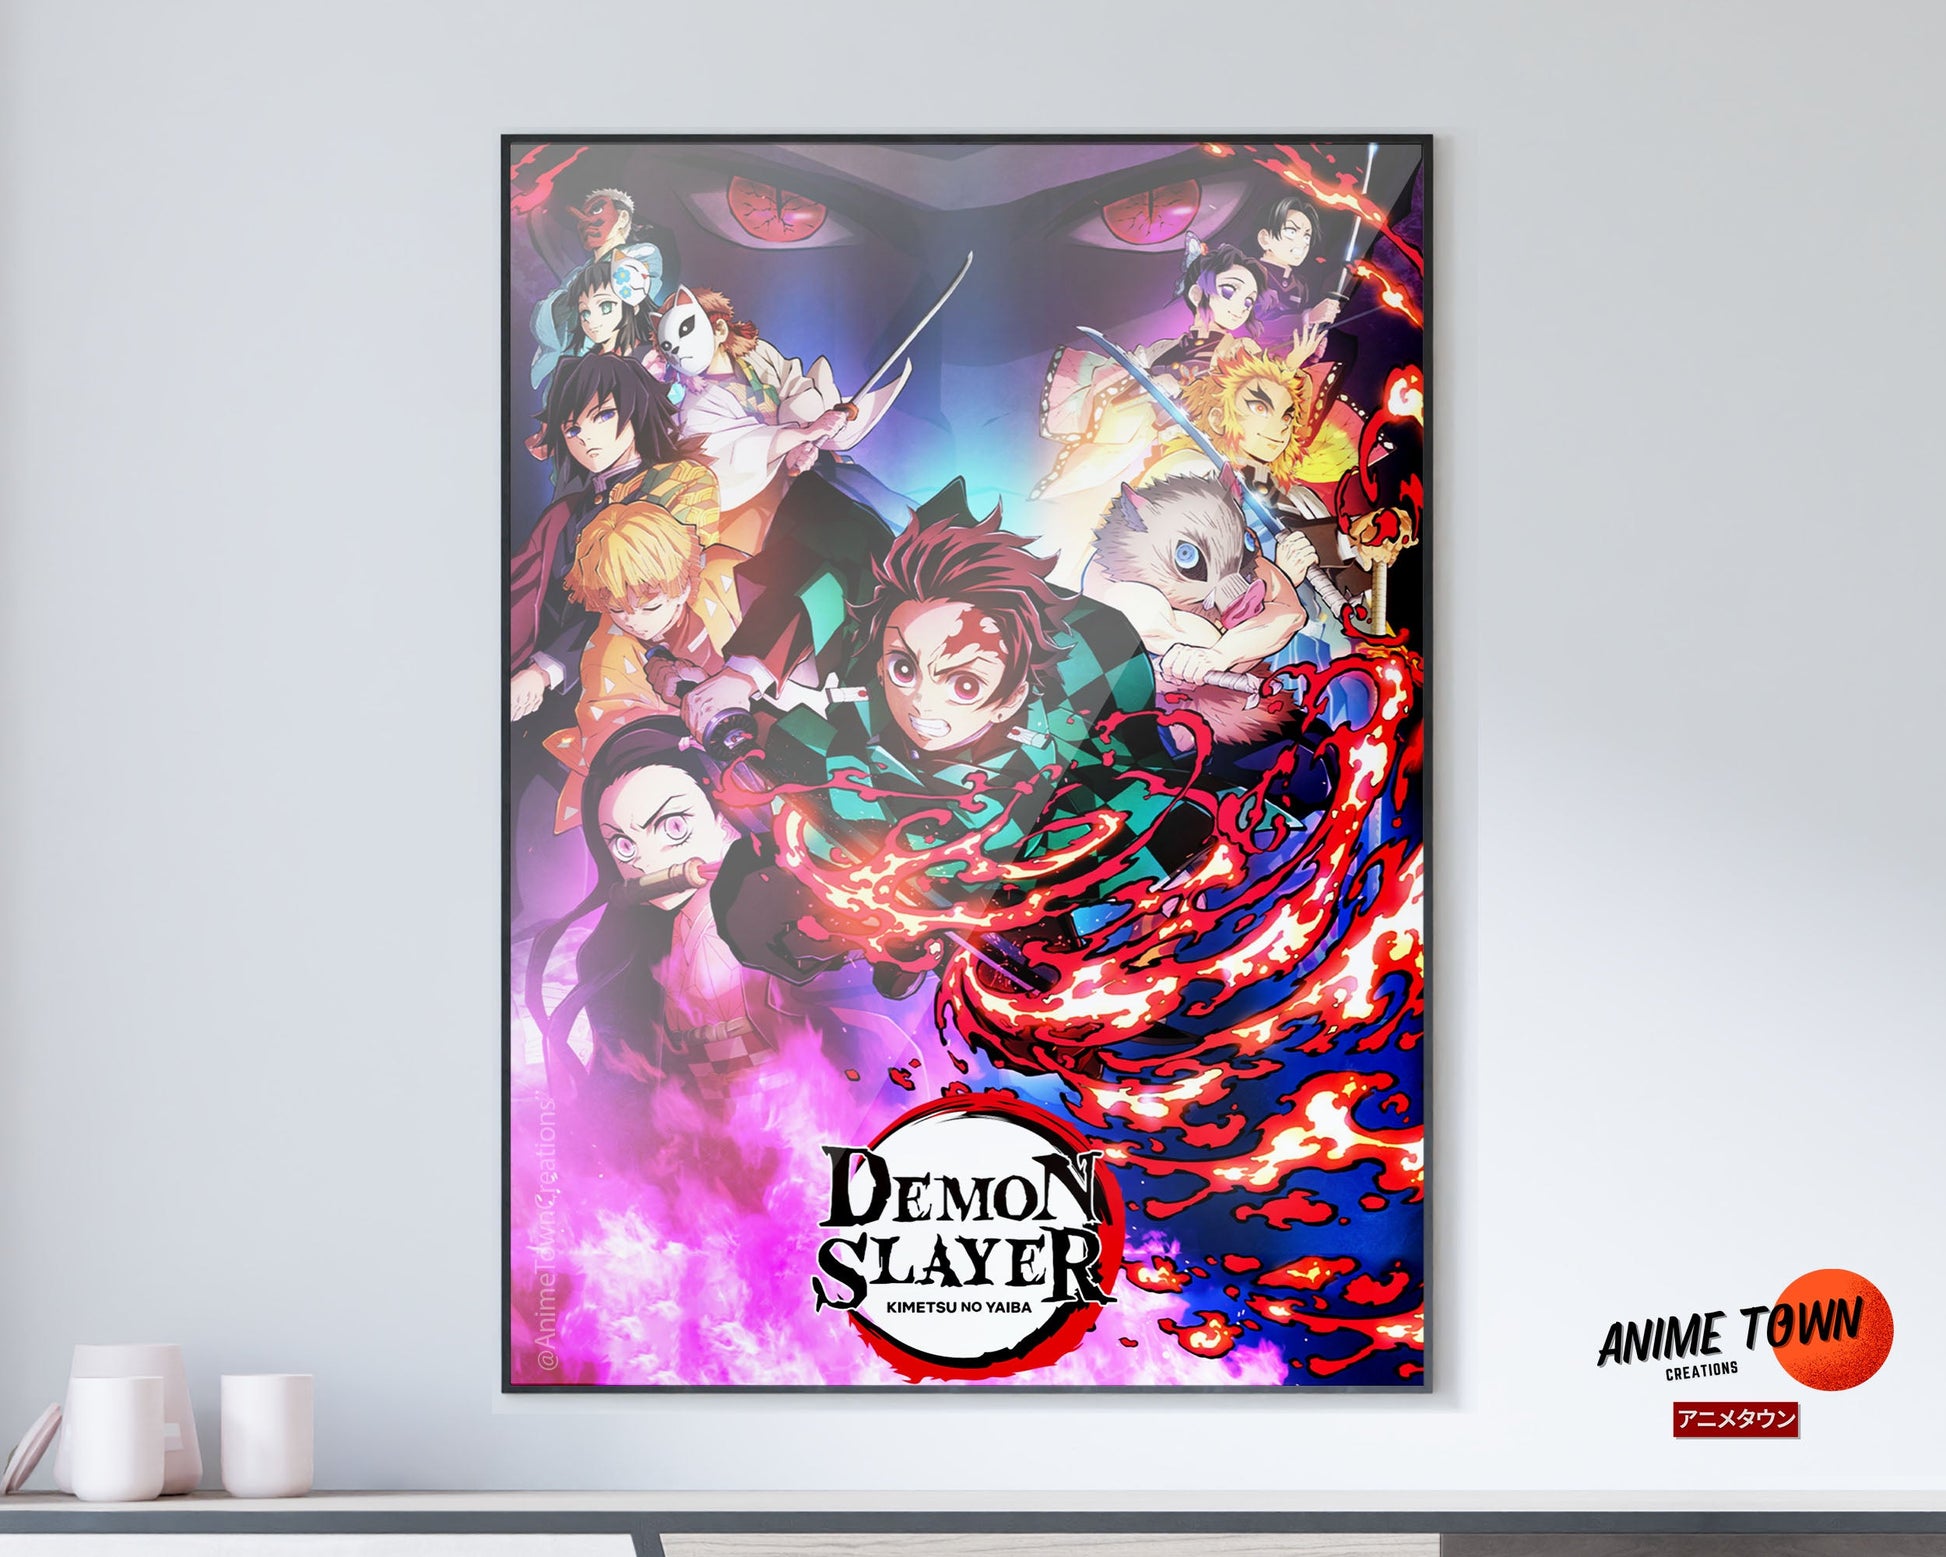 Anime Town Creations Poster Demon Slayer Kimetsu no Yaiba 5" x 7" Home Goods - Anime Demon Slayer Poster